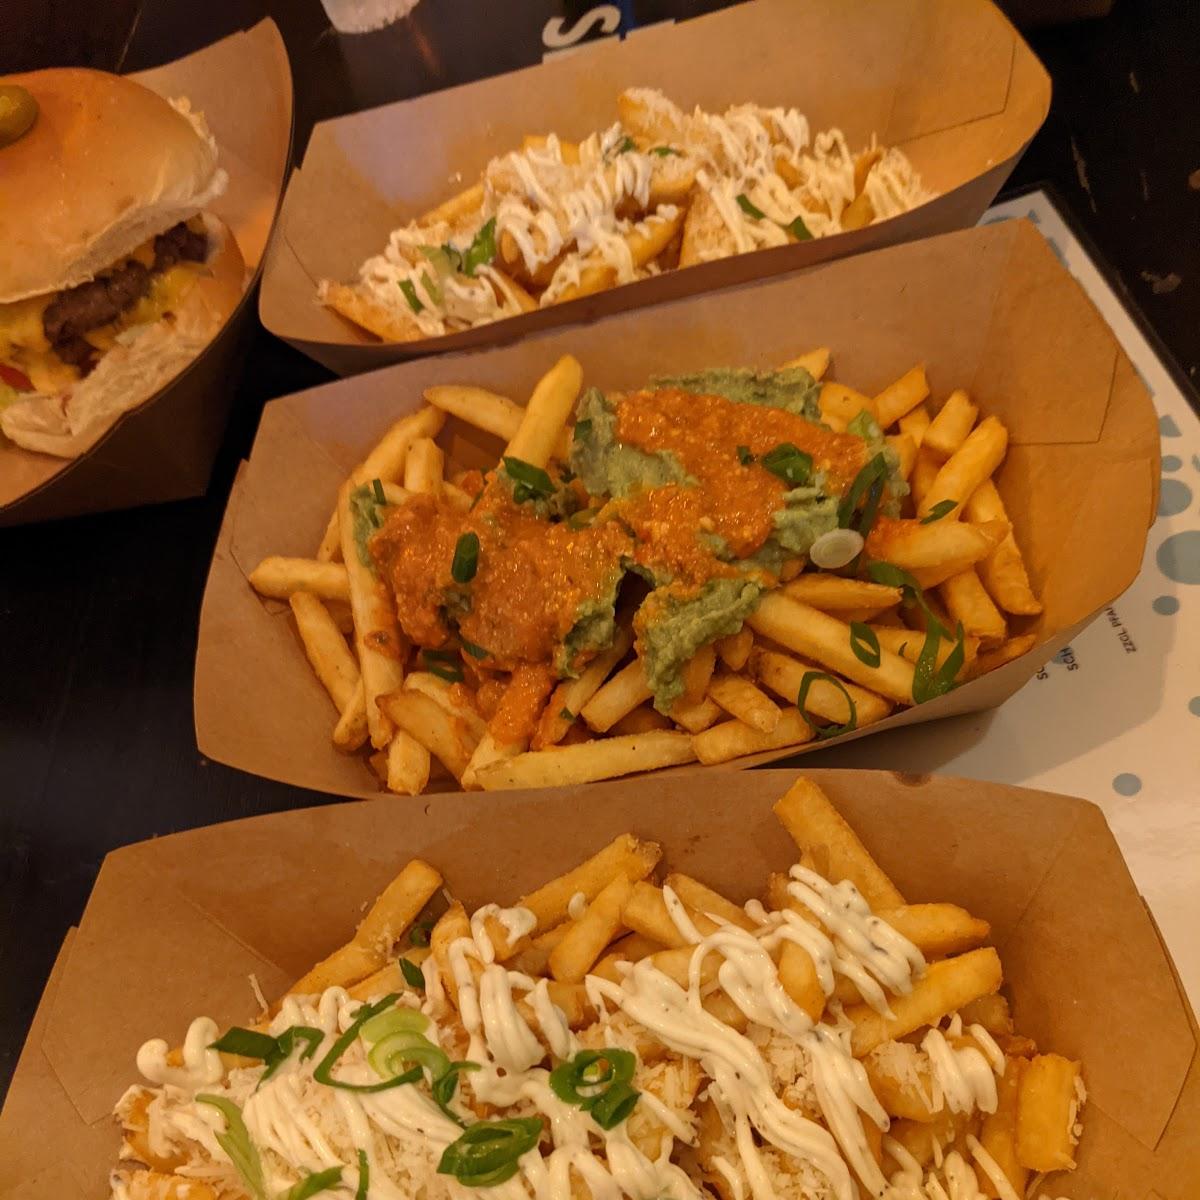 Restaurant "doppelt Käse - Burger, Fingerfood, Vegan, Pommes" in Berlin